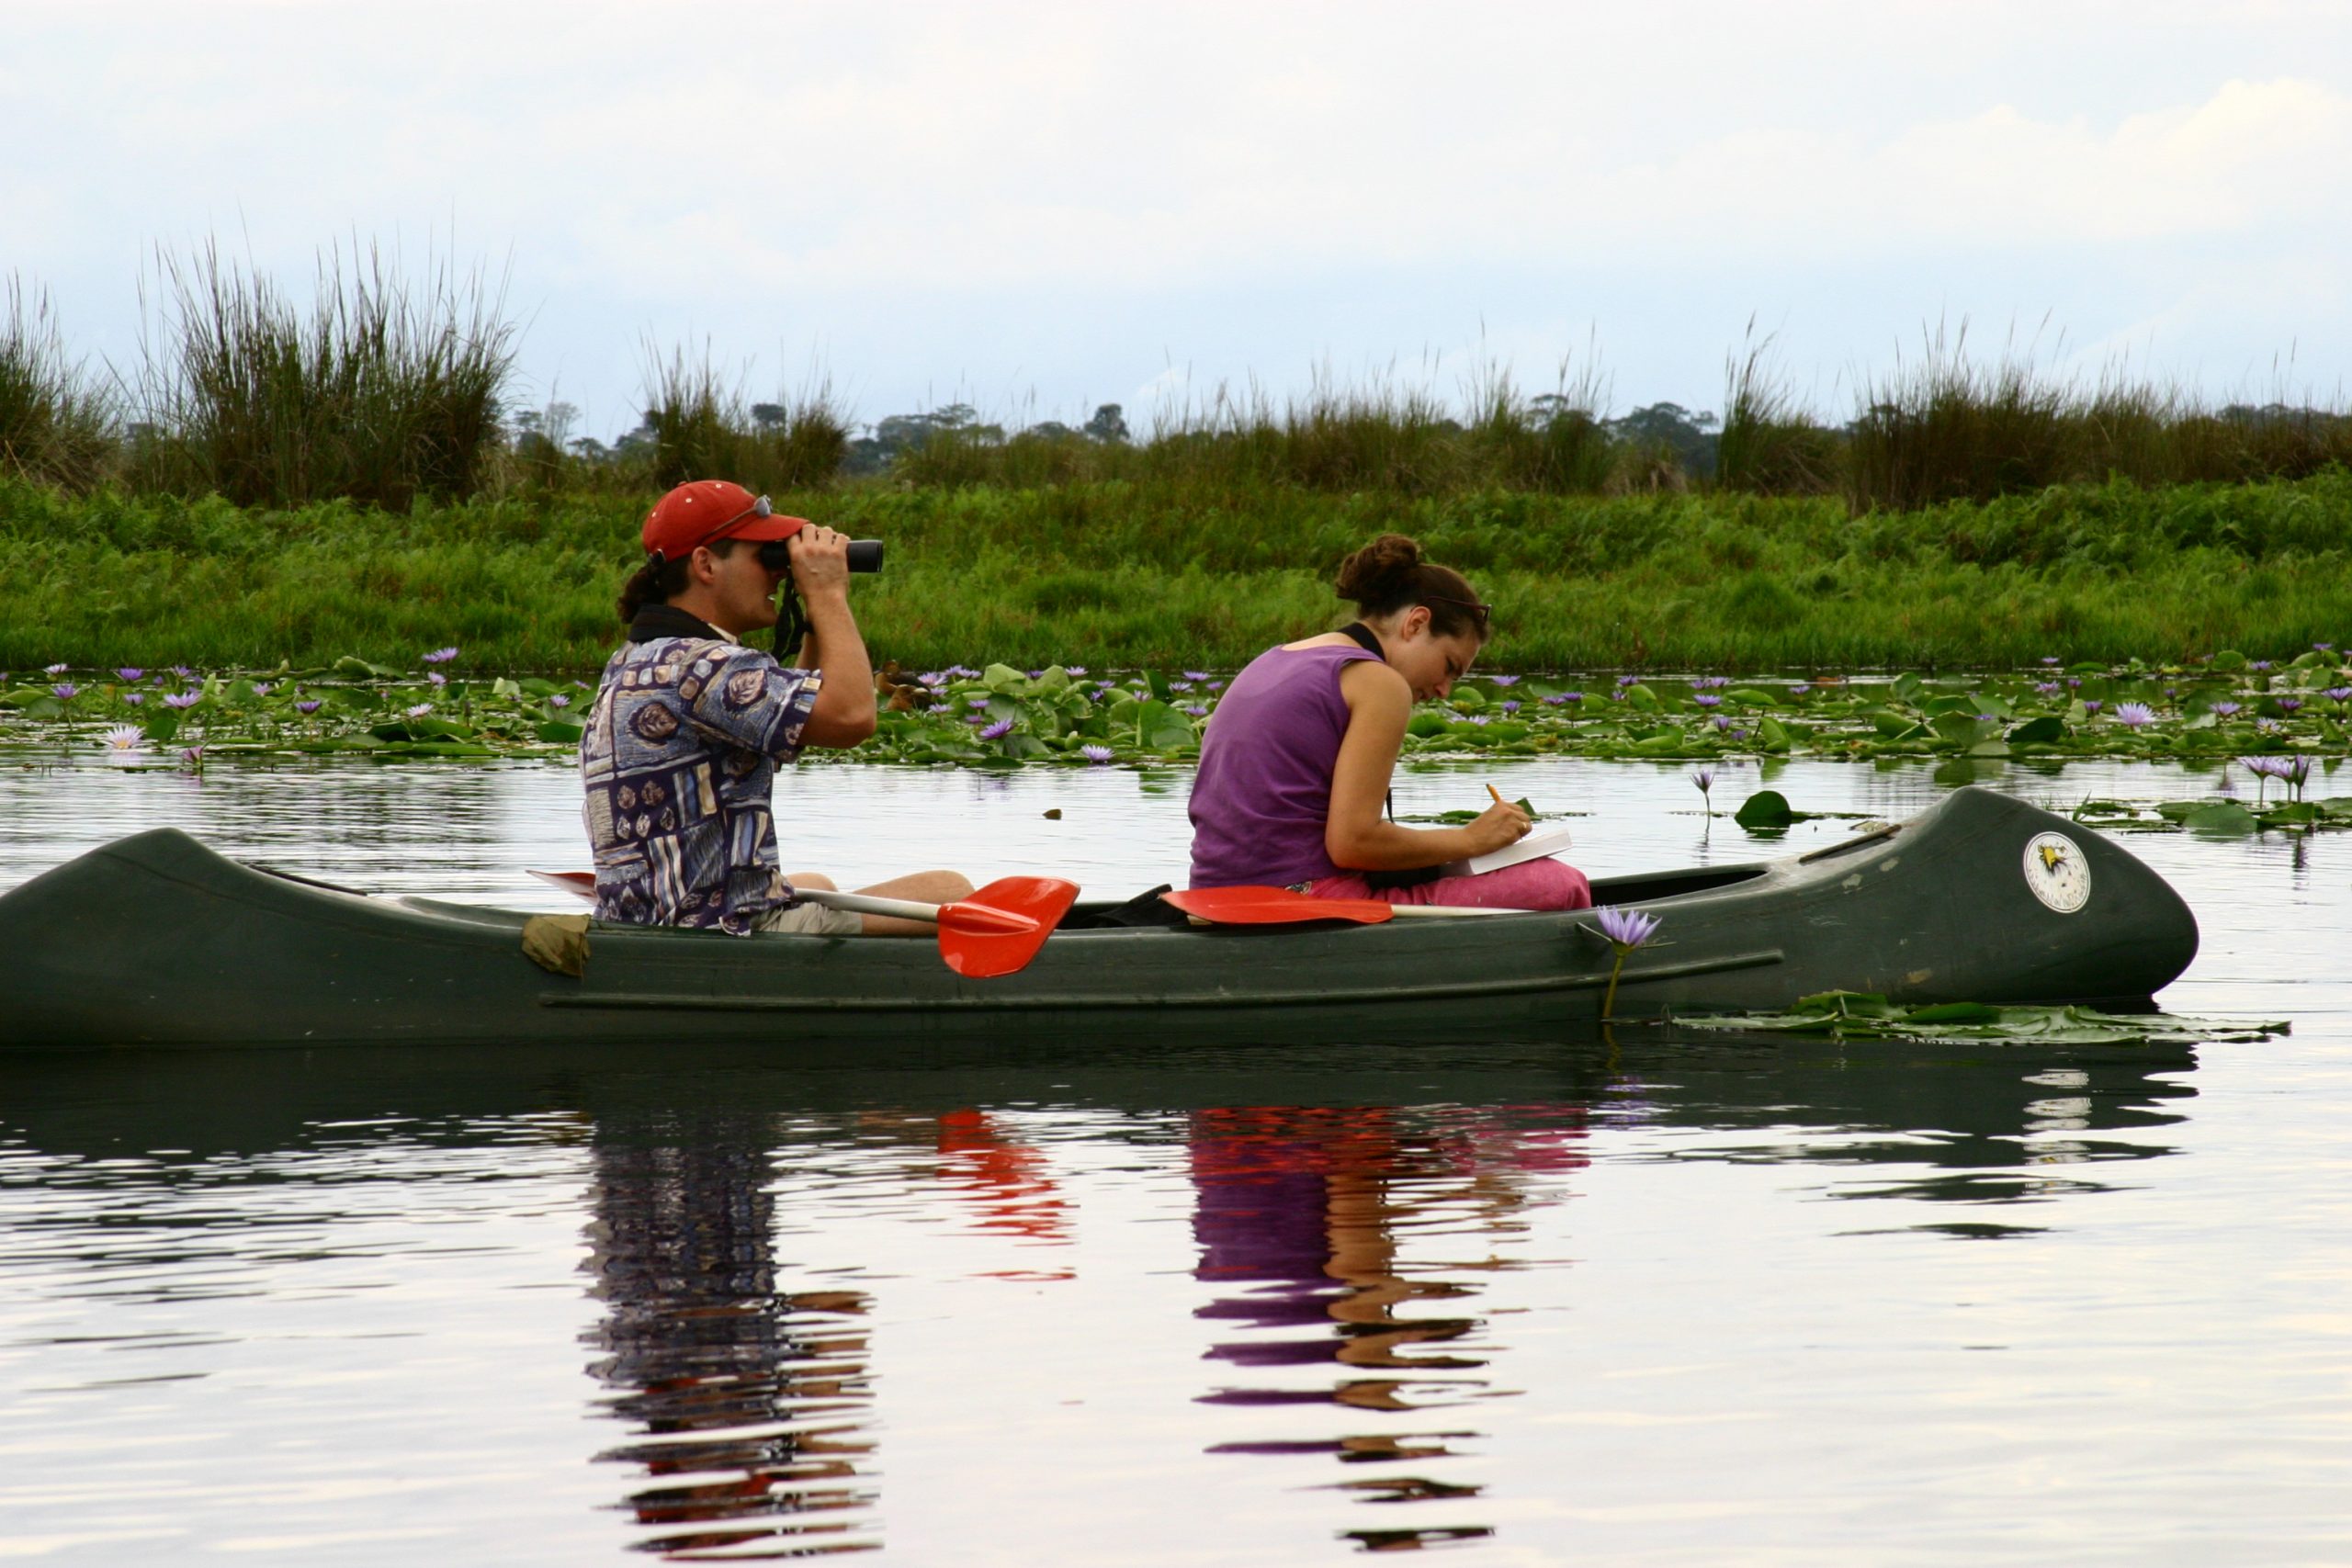 canoeing in lake mburo - 5 Days Uganda wildlife safari, horse riding, night game drive & birding tour